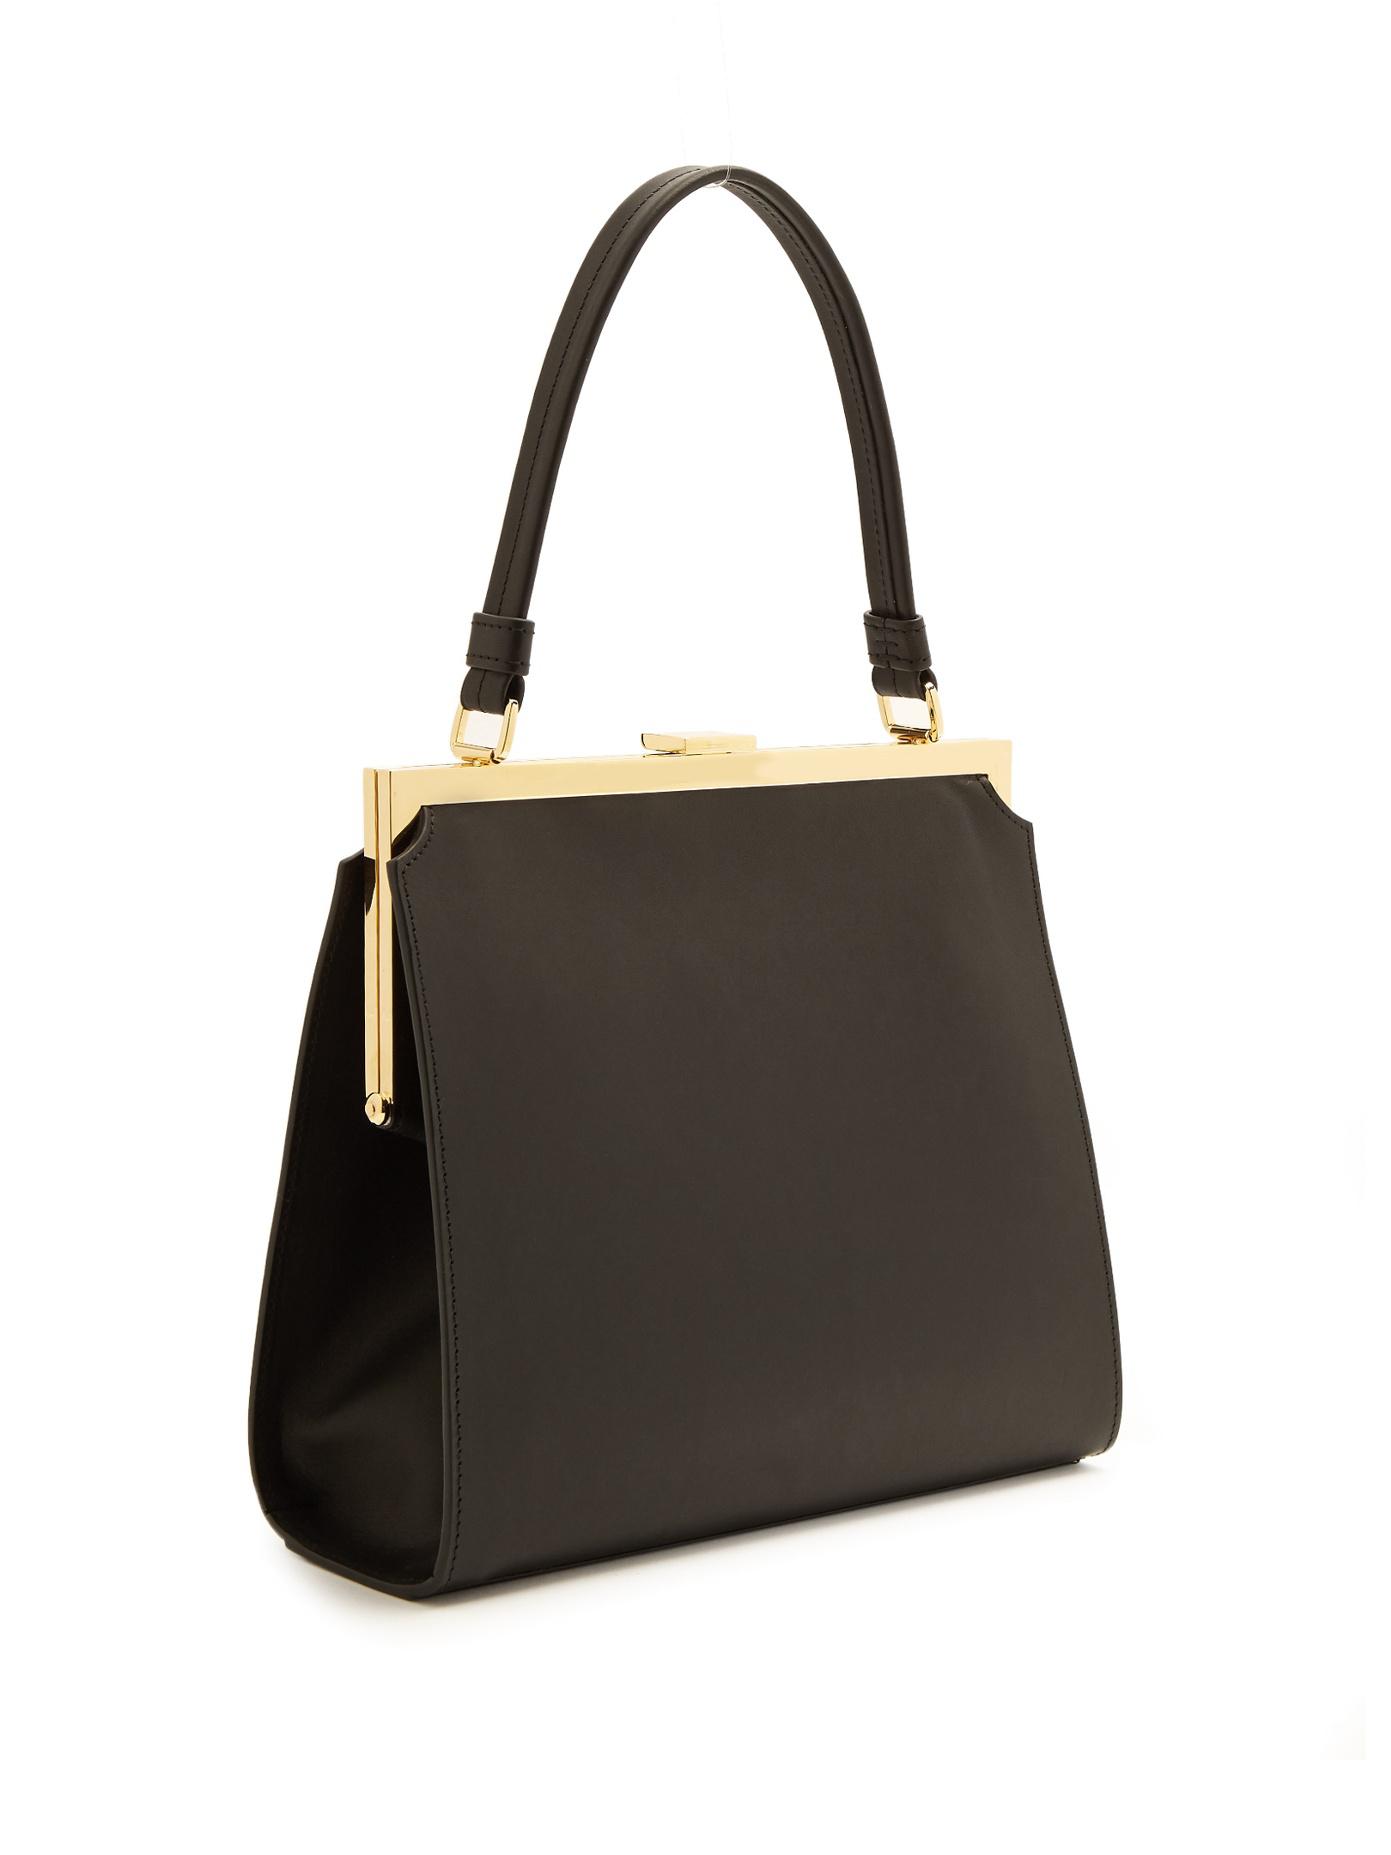 Mansur Gavriel Elegant Leather Top-Handle Bag in Black